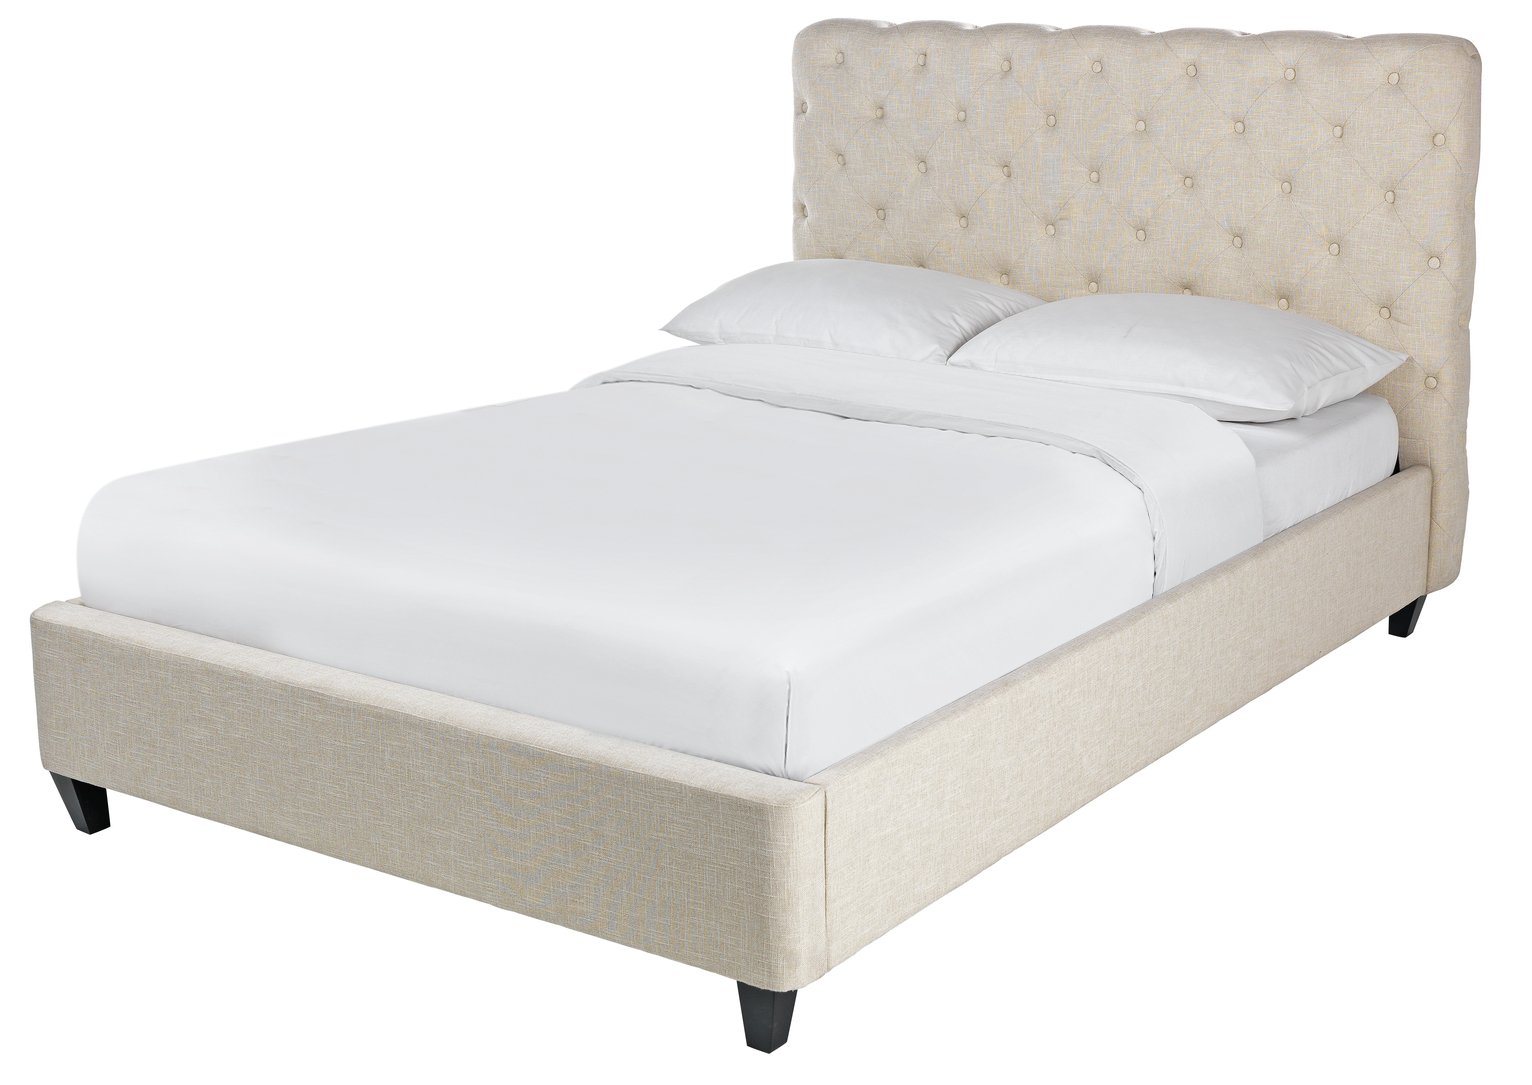 Argos Home Bouton Upholstered Kingsize Bed Frame - Natural